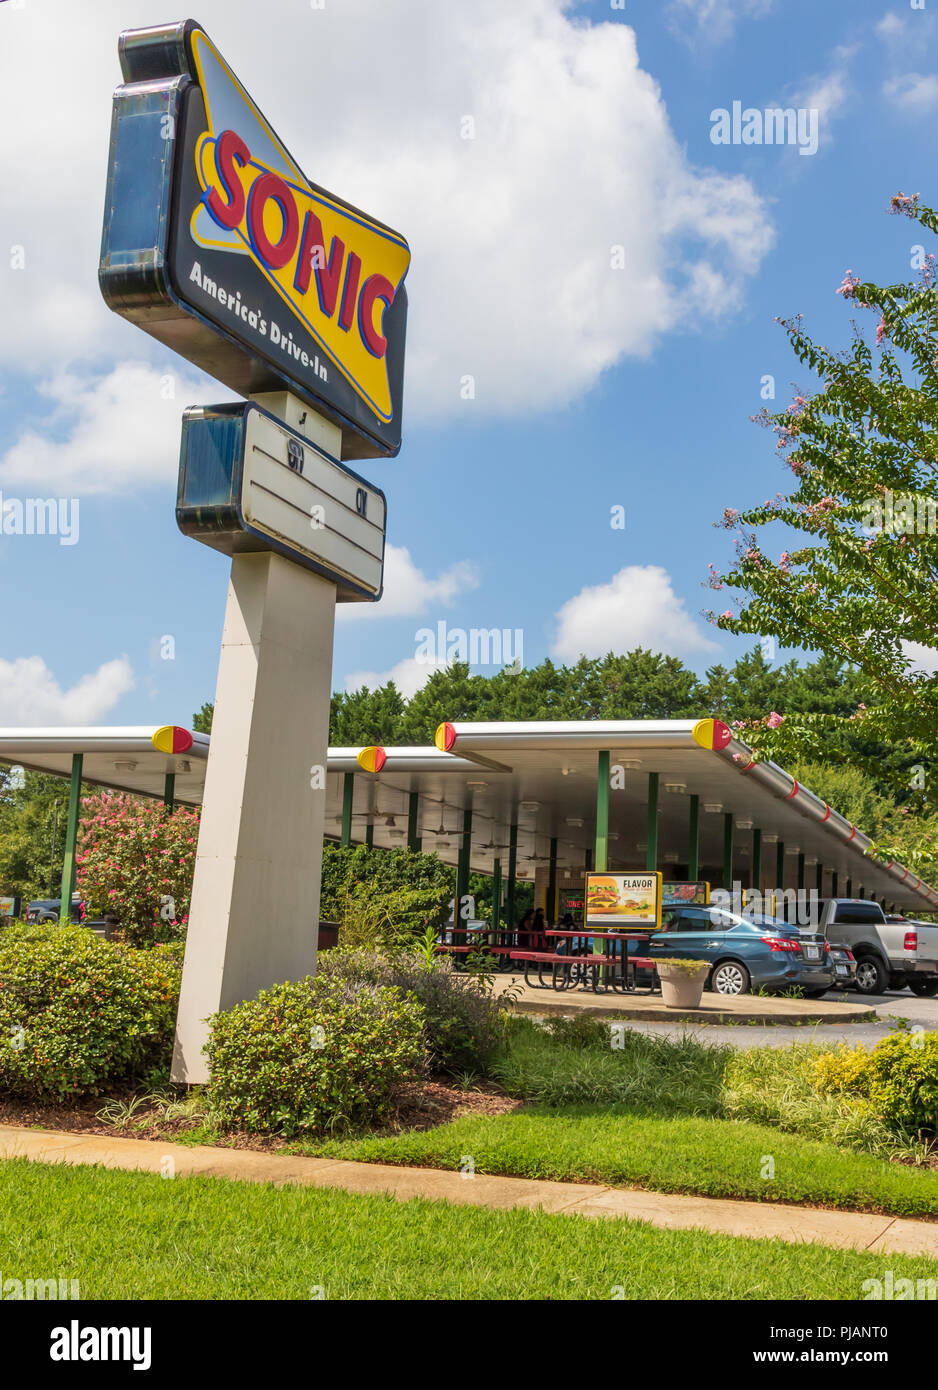 NEWTON, NC, USA -9/2/18: Ein Sonic Drive-in Fast Food Restaurant, zeigt ein Straßenschild und Service. 4 Personen am Tisch sichtbar unter der Markise. Stockfoto